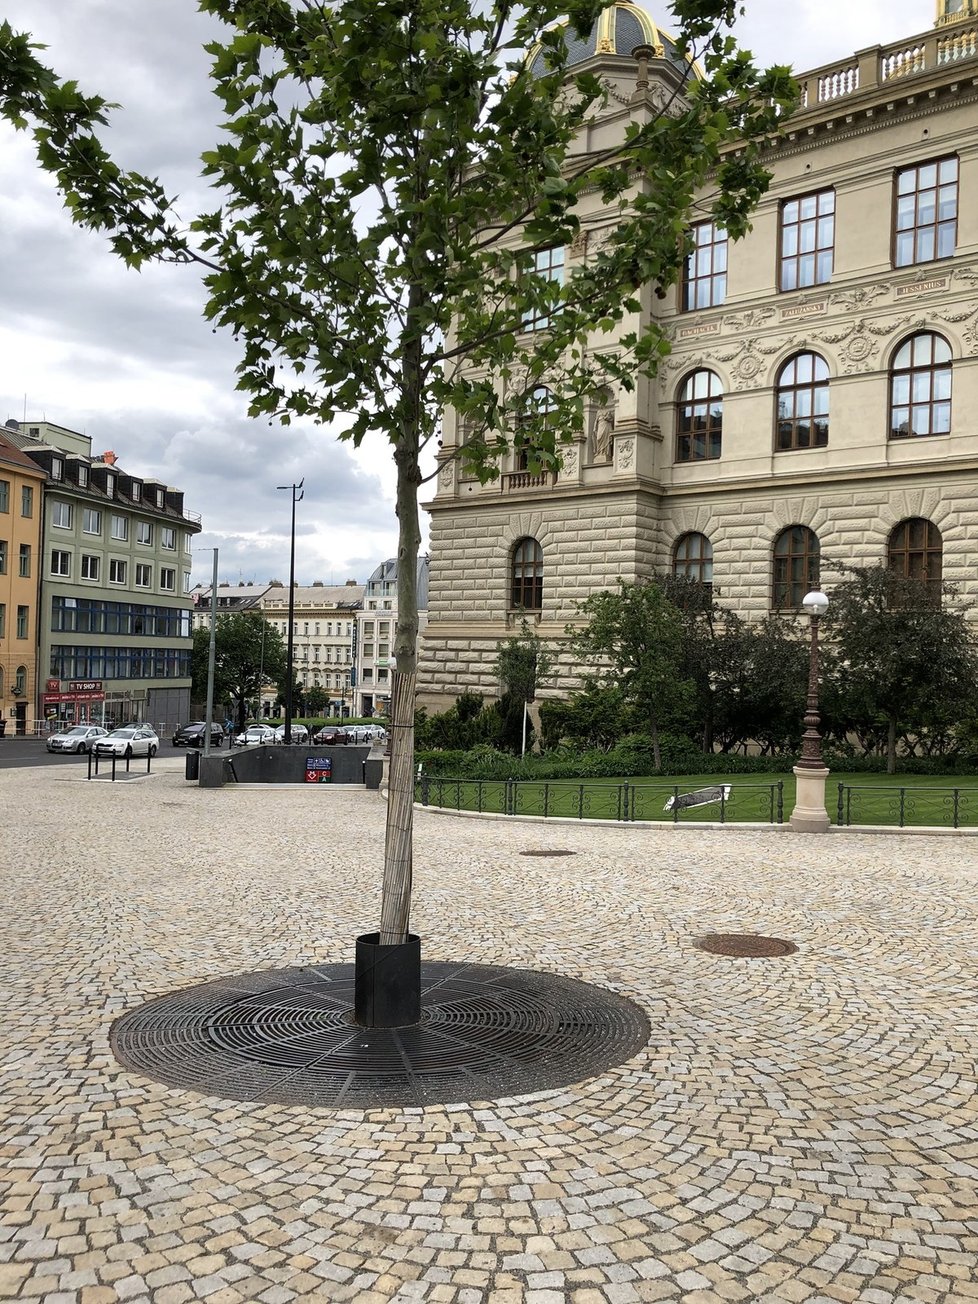 V Praze najdeme ale i spoustu dobrých příkladů, jak mohou být stromy zasazeny. Jedním z nich je i okolí Národního muzea, které prošlo rekonstrukcí vcelku nedávno